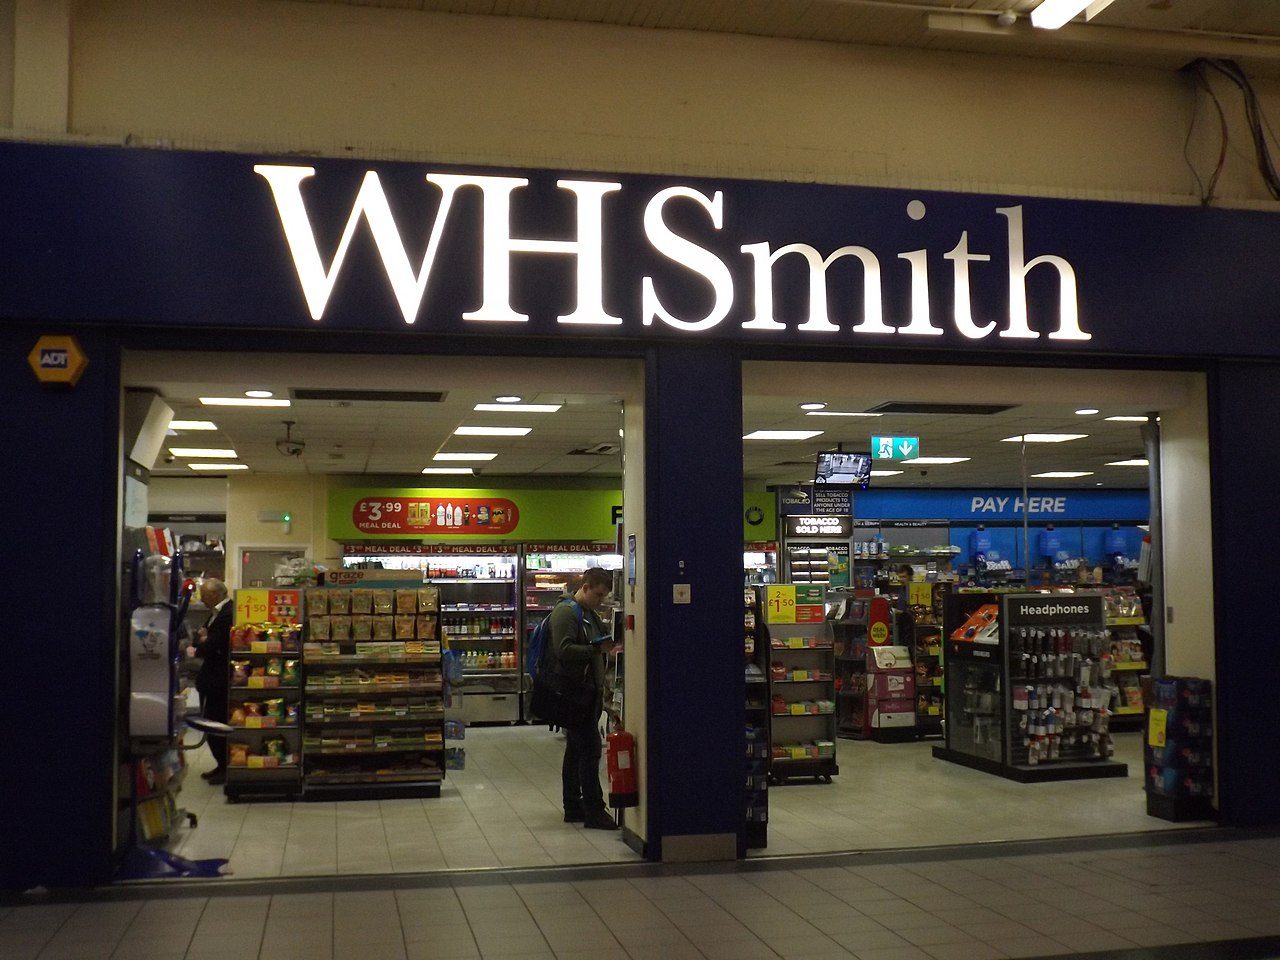 Tihama operates the WH Smith brand in Saudi Arabia